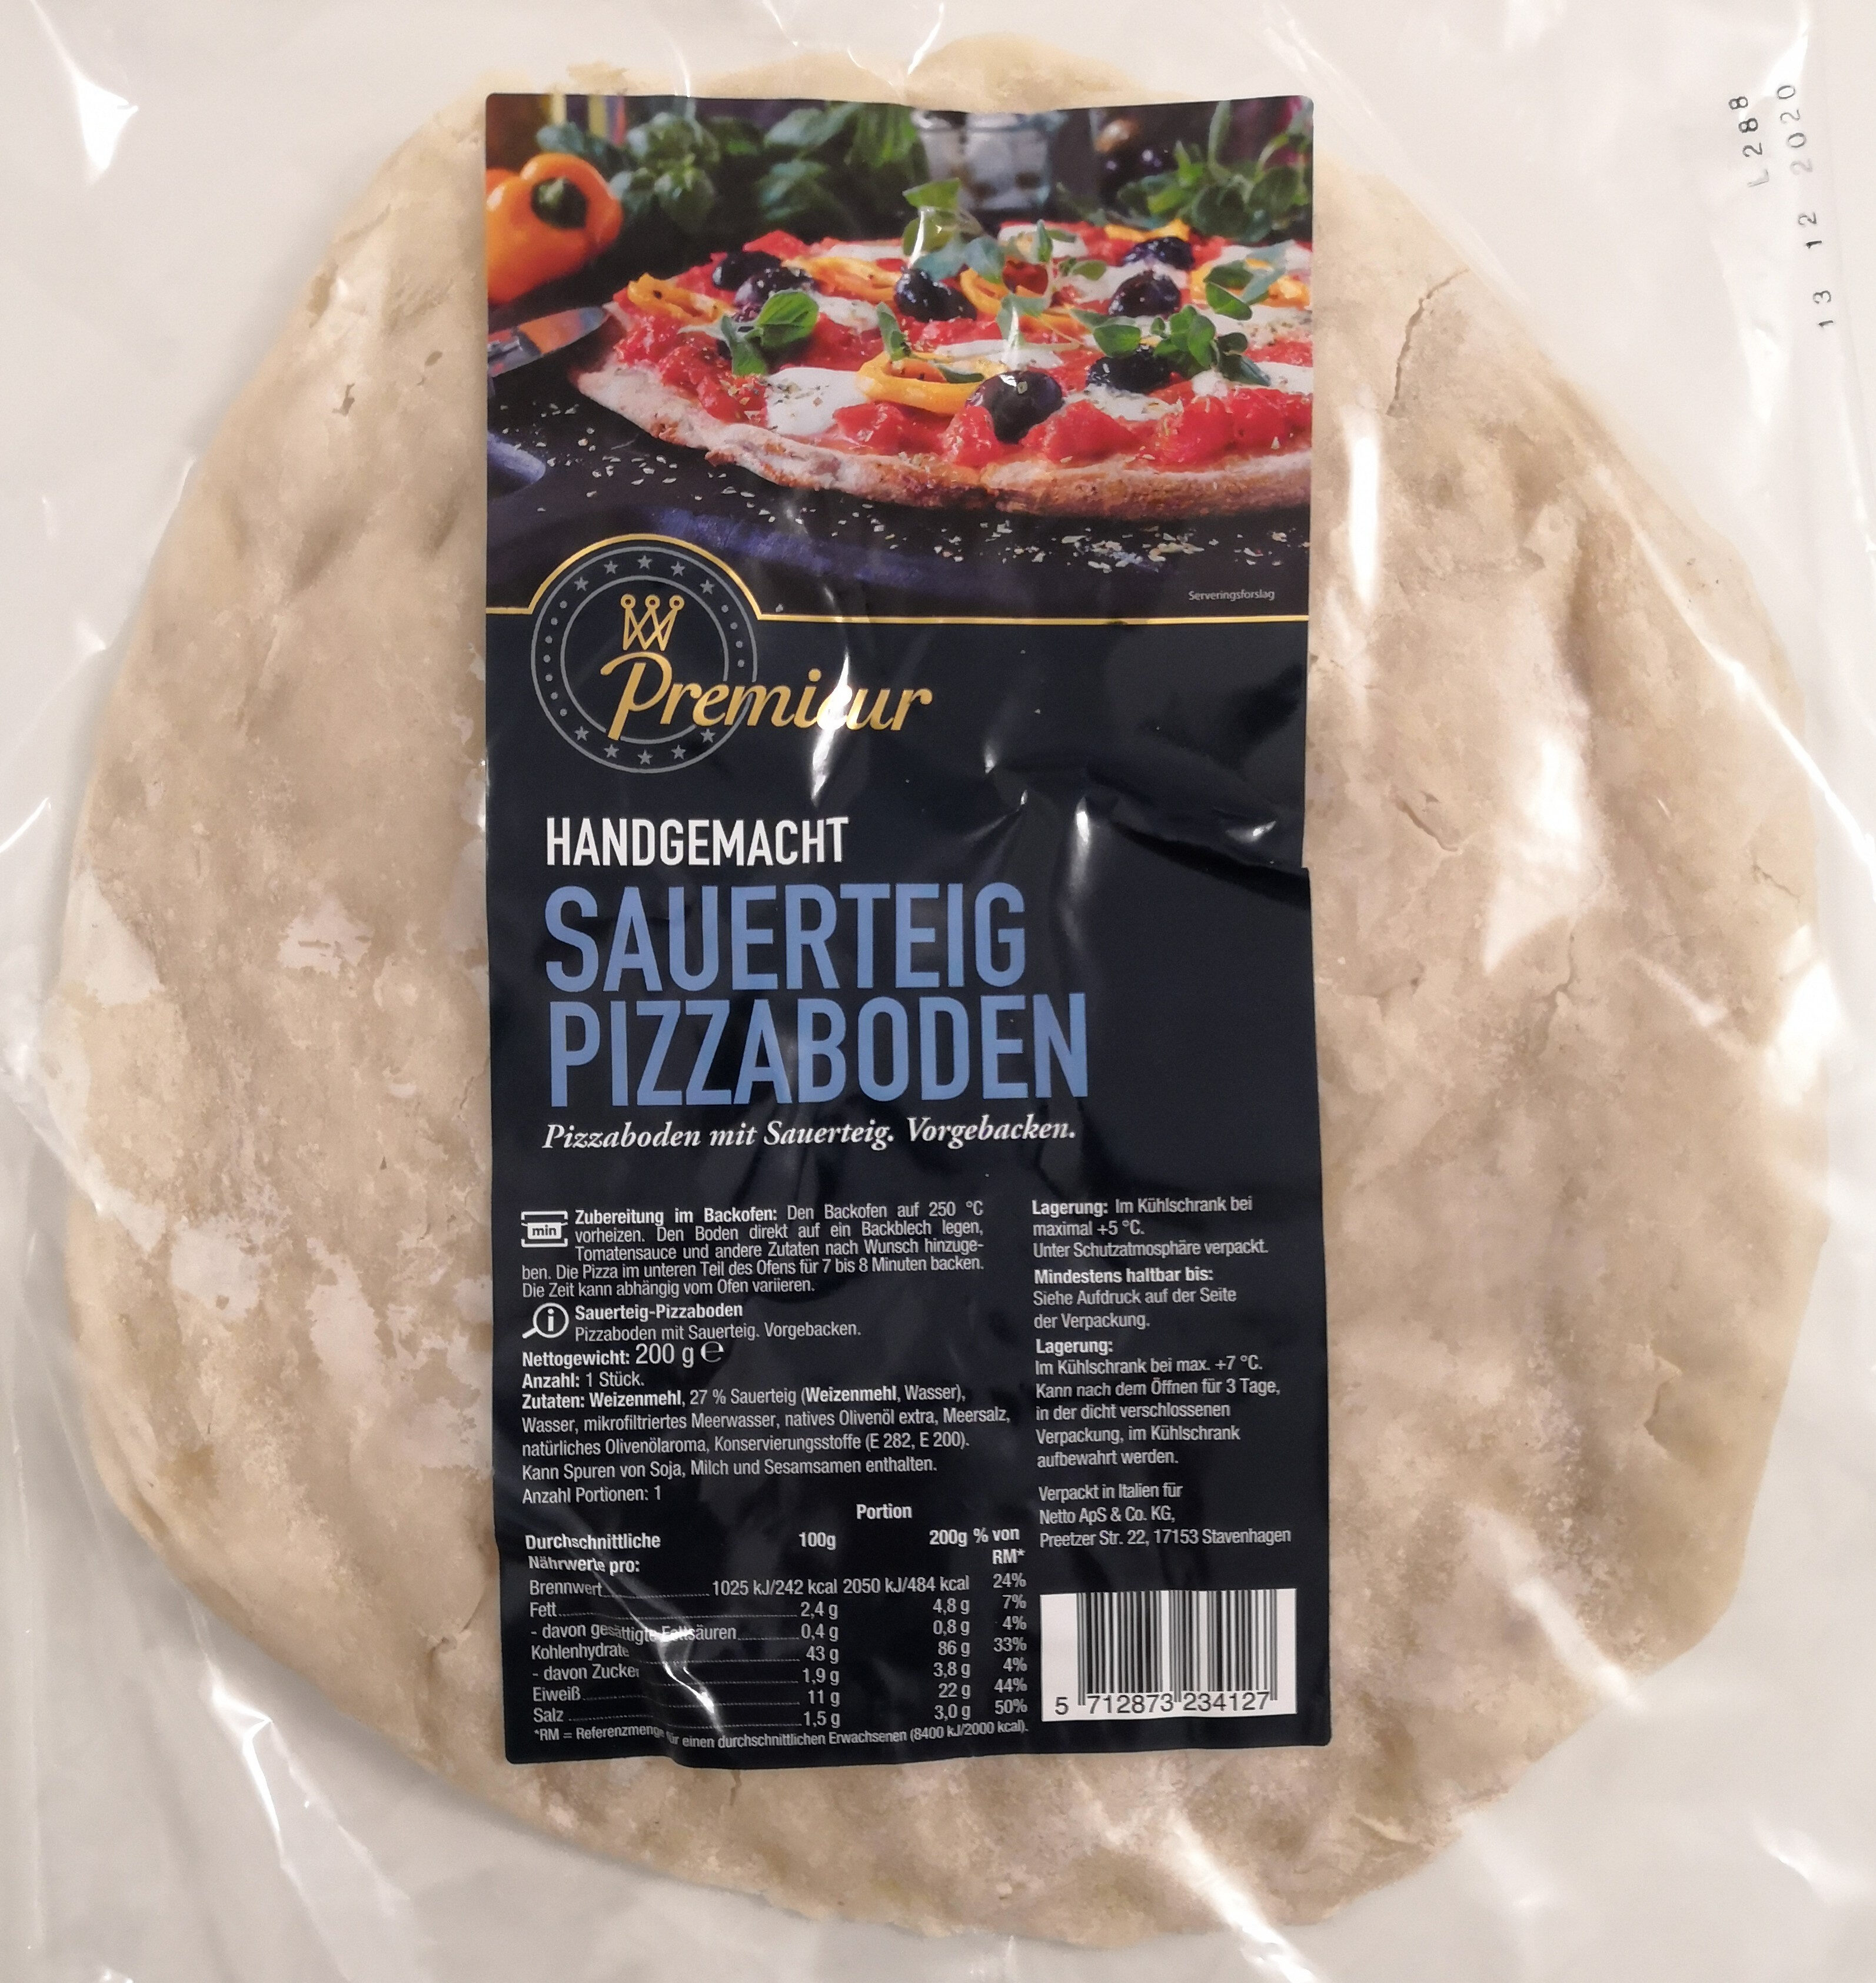 Premieur Sauerteig Pizzaboden - Product - de